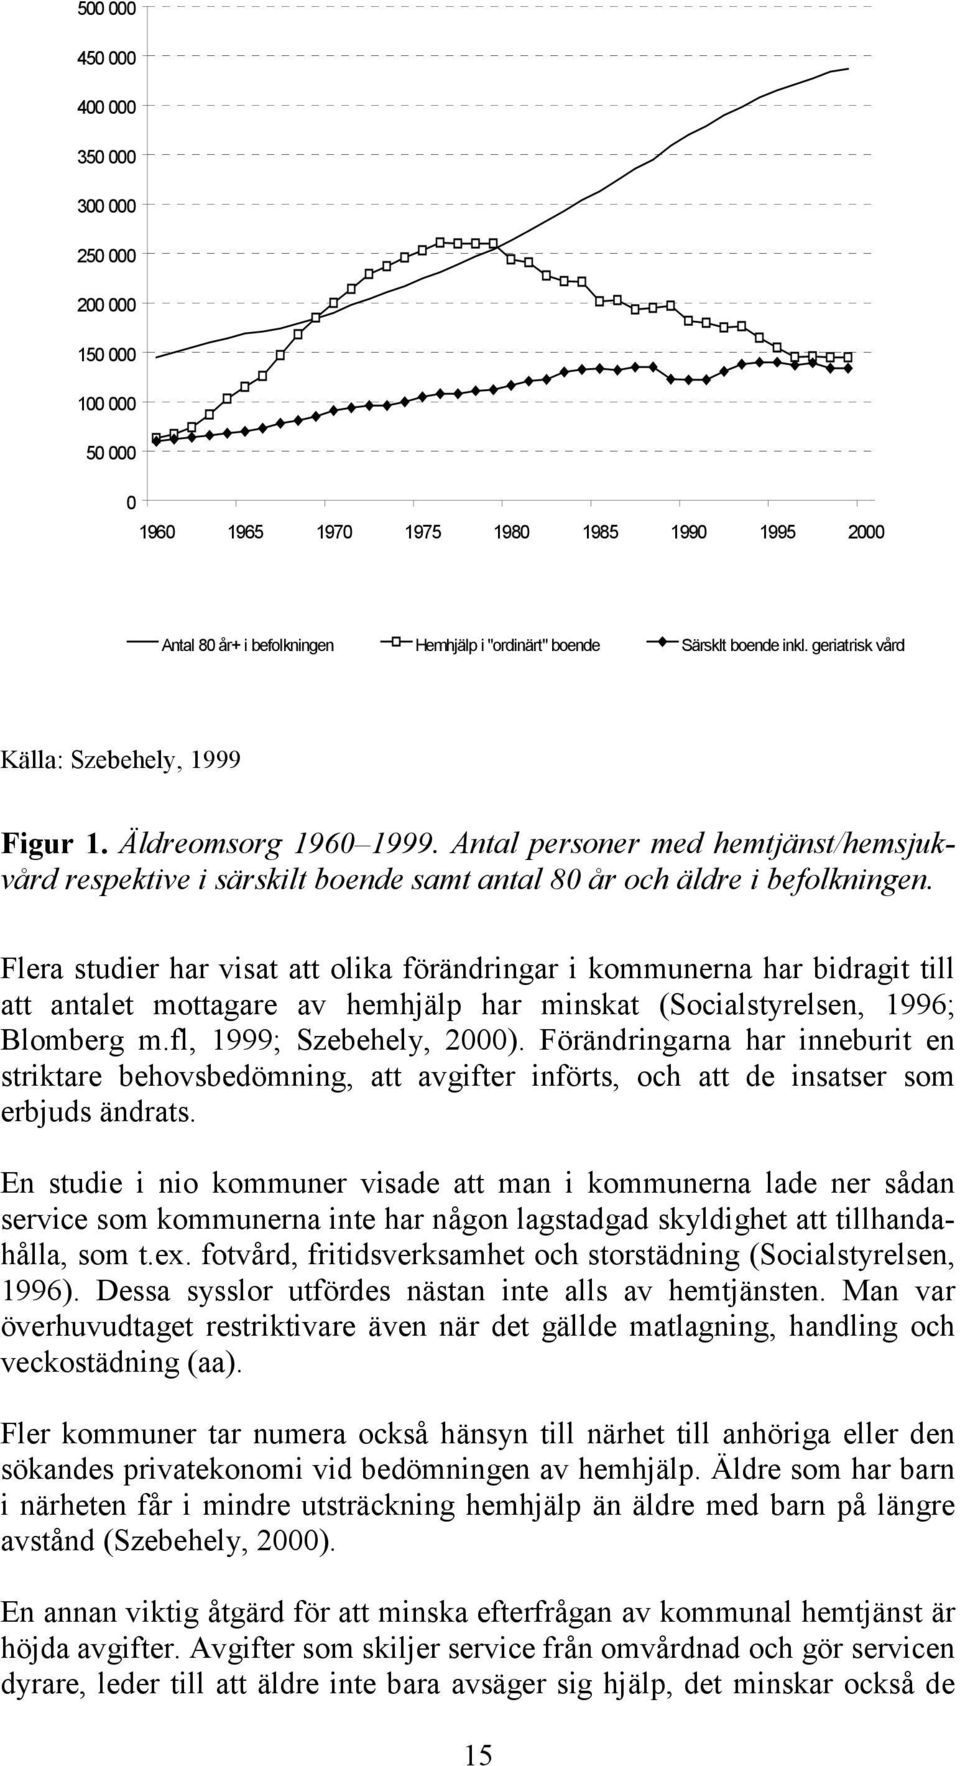 Flera studier har visat att olika förändringar i kommunerna har bidragit till att antalet mottagare av hemhjälp har minskat (Socialstyrelsen, 1996; Blomberg m.fl, 1999; Szebehely, 2000).